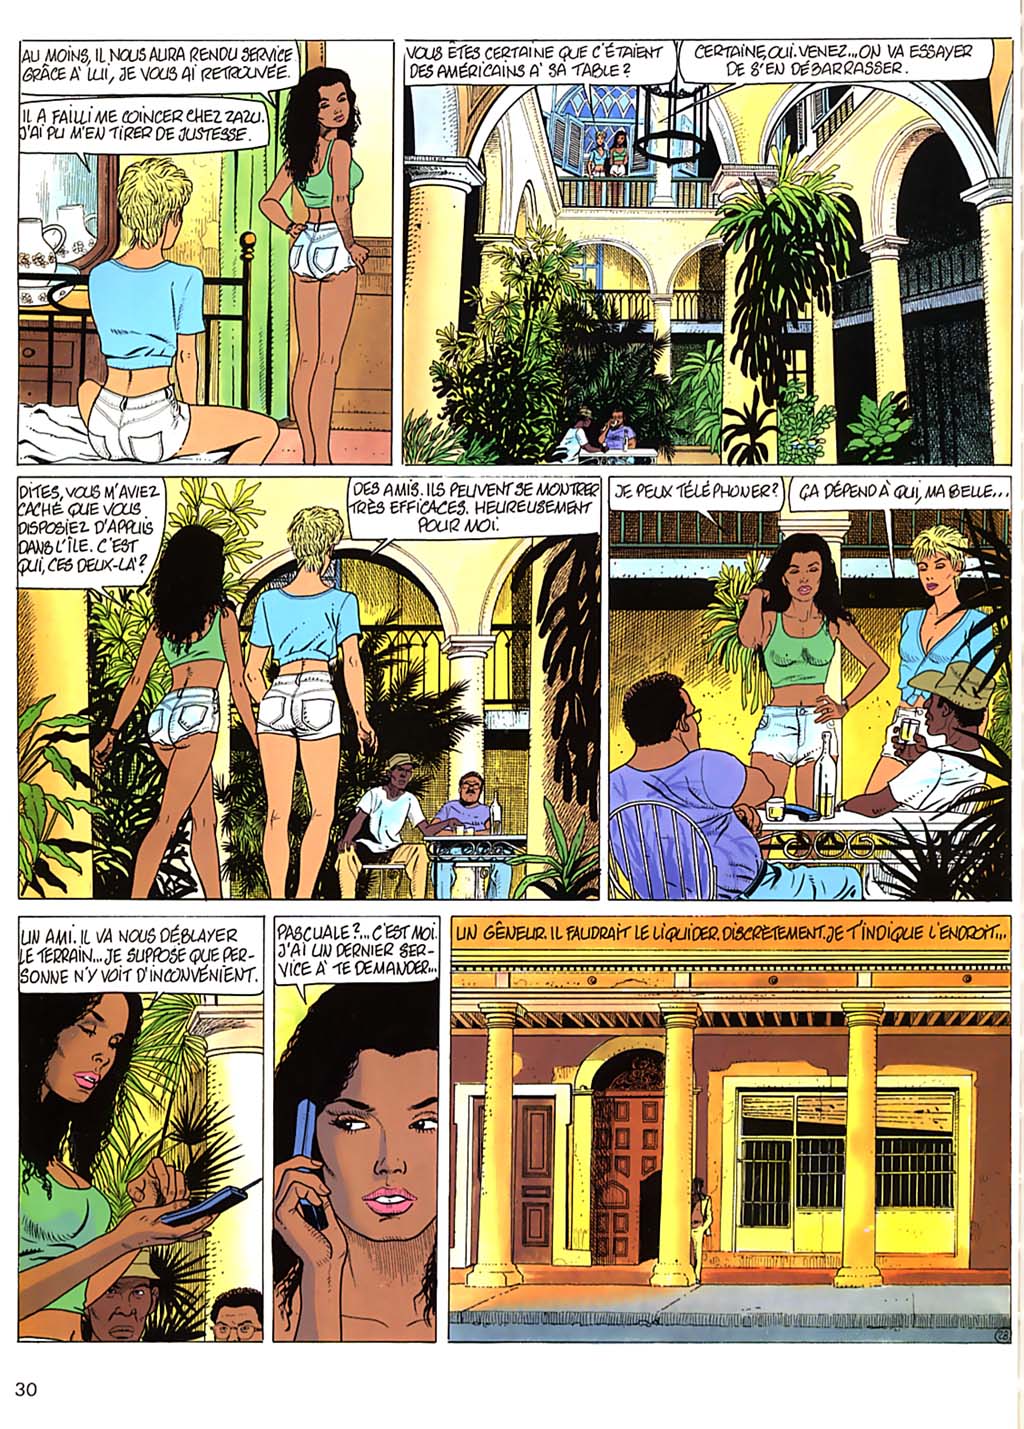 Jessica Blandy - 14 - Cuba numero d'image 29